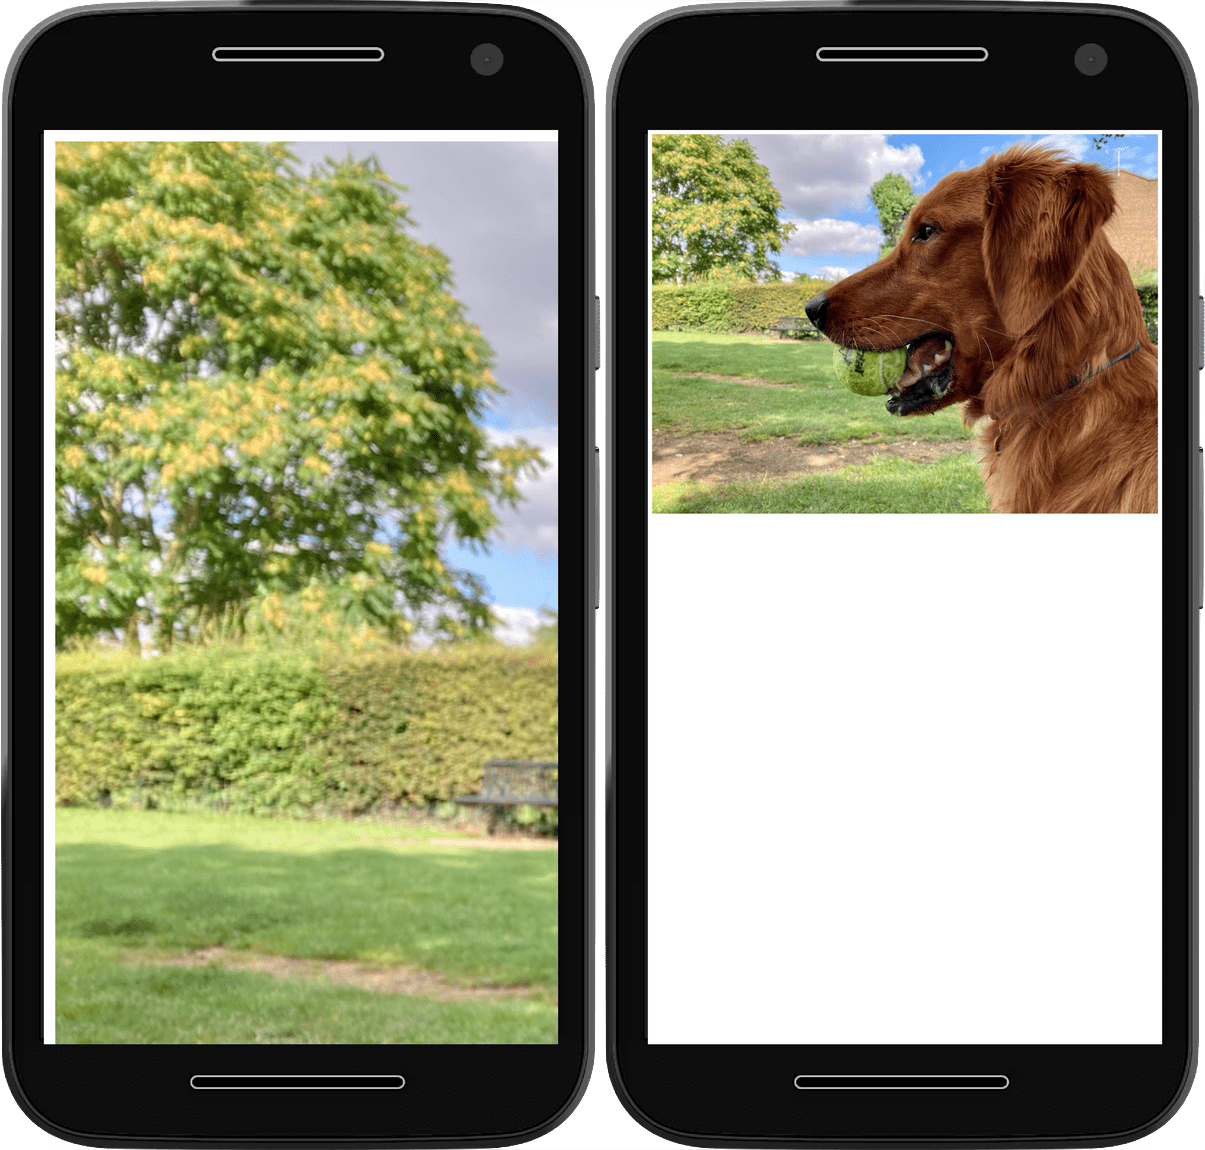 لقطتا شاشة، تعرض الأولى صورة تتخطى عرض المتصفح، بينما تعرض الصورة الثانية الصورة نفسها المحدودة داخل إطار عرض المتصفح.